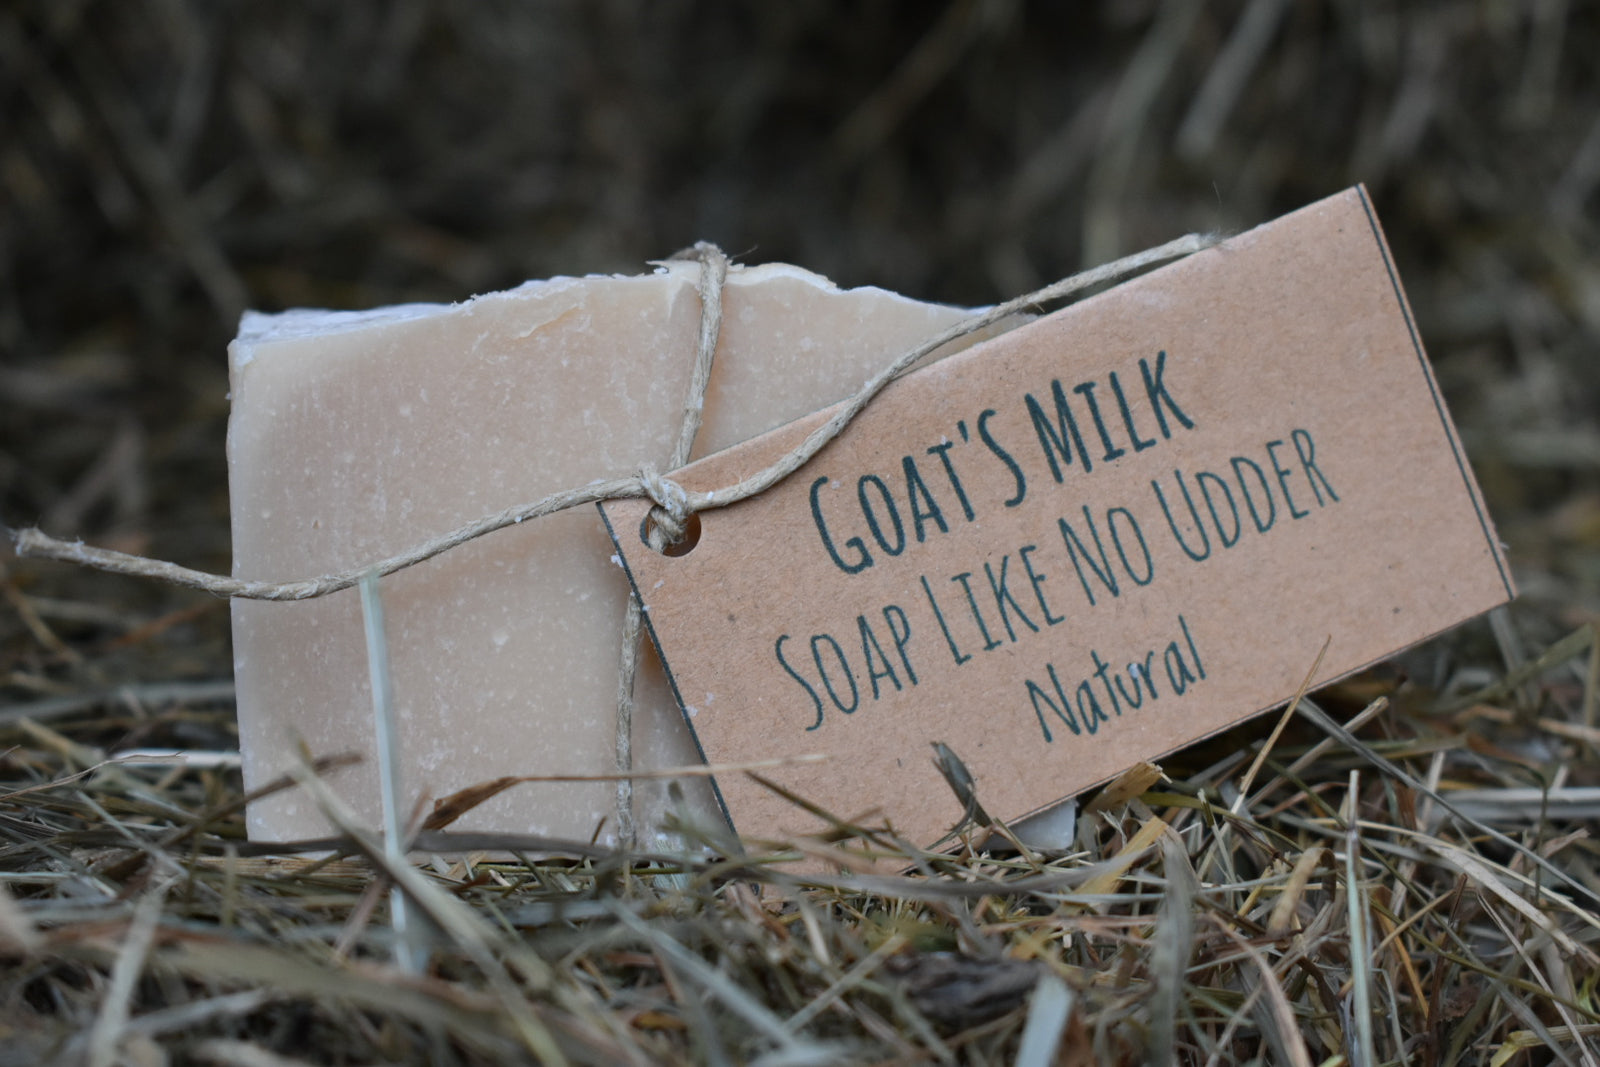 Natural Goat's Milk Soap Like No Udder